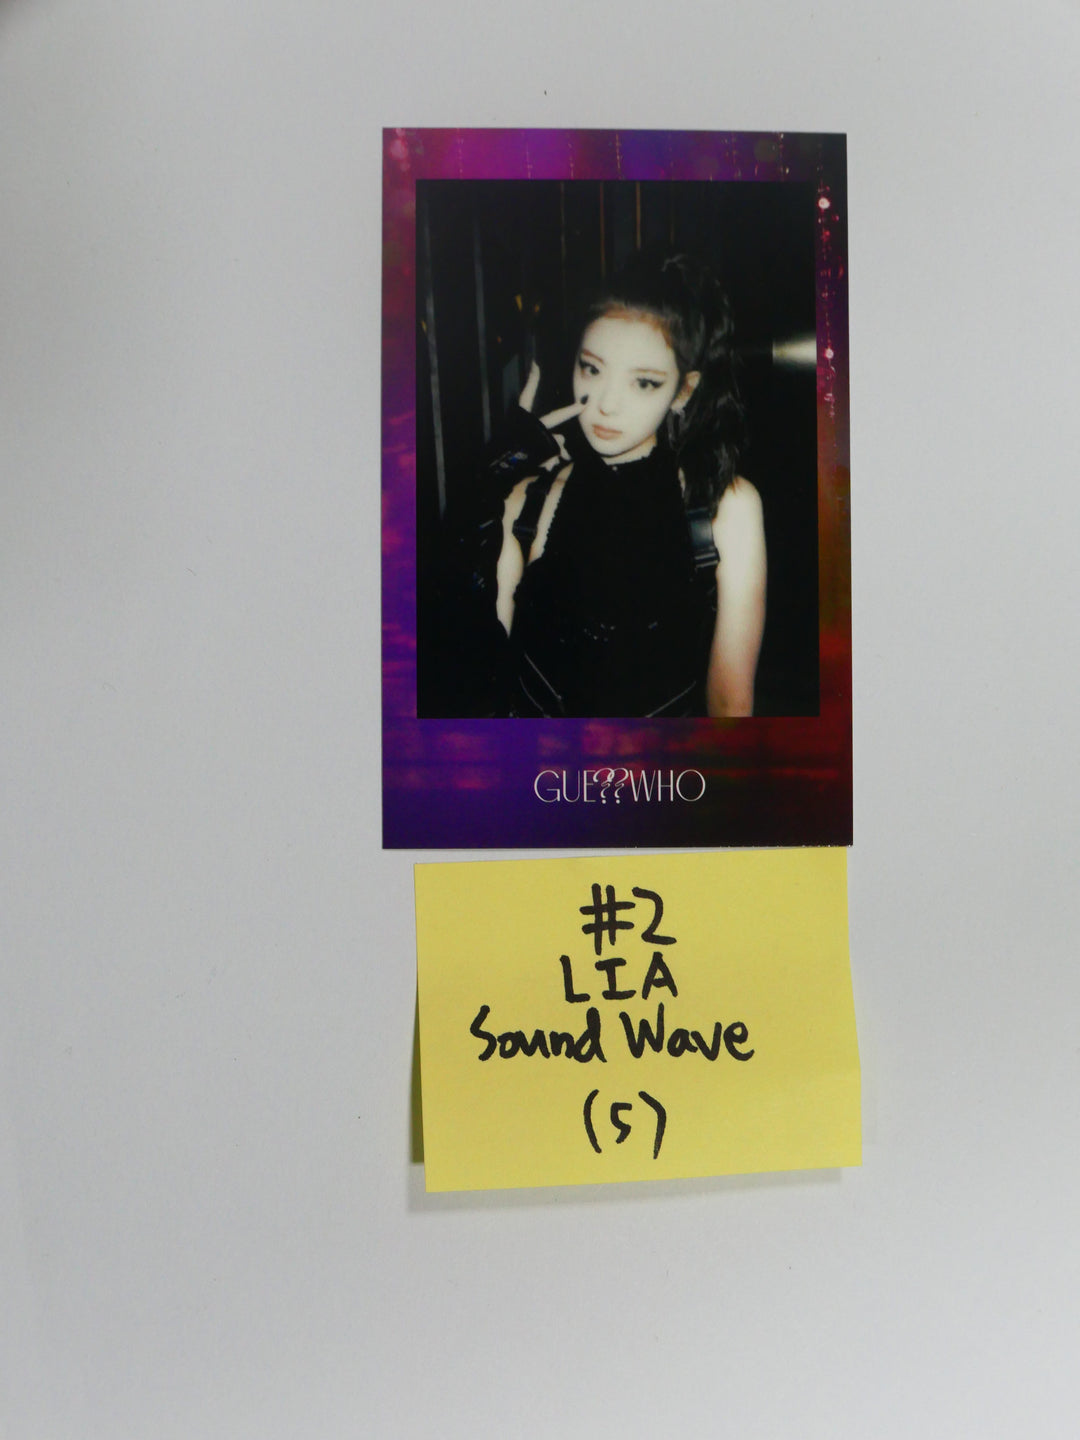 ITZY 'Guess Who' - 사운드웨이브 팬사인회 이벤트 폴라로이드 포토카드